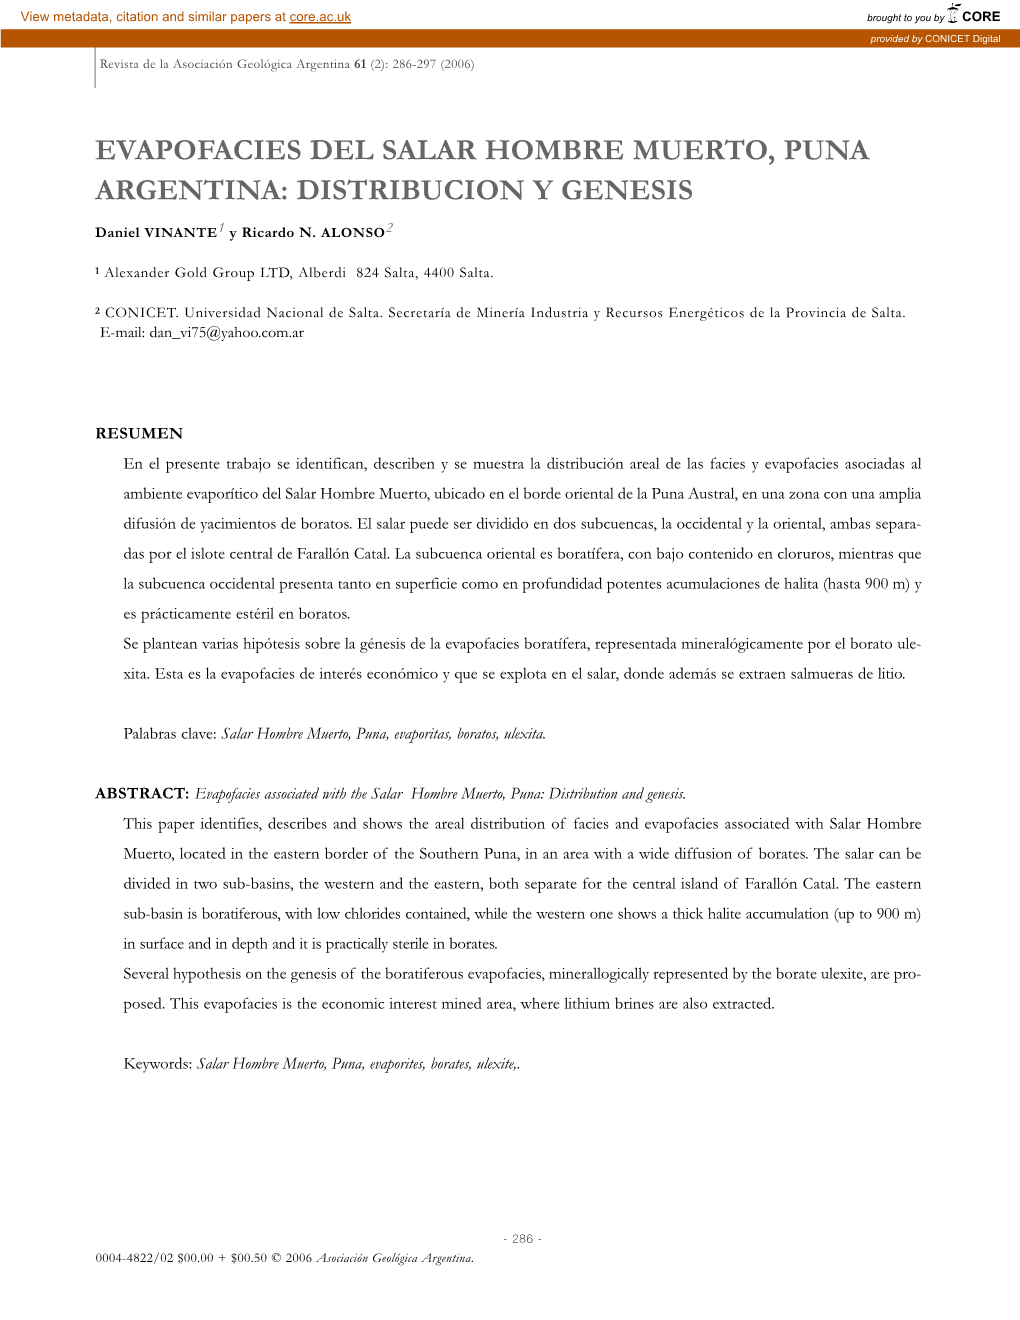 Evapofacies Del Salar Hombre Muerto, Puna Argentina: Distribucion Y Genesis